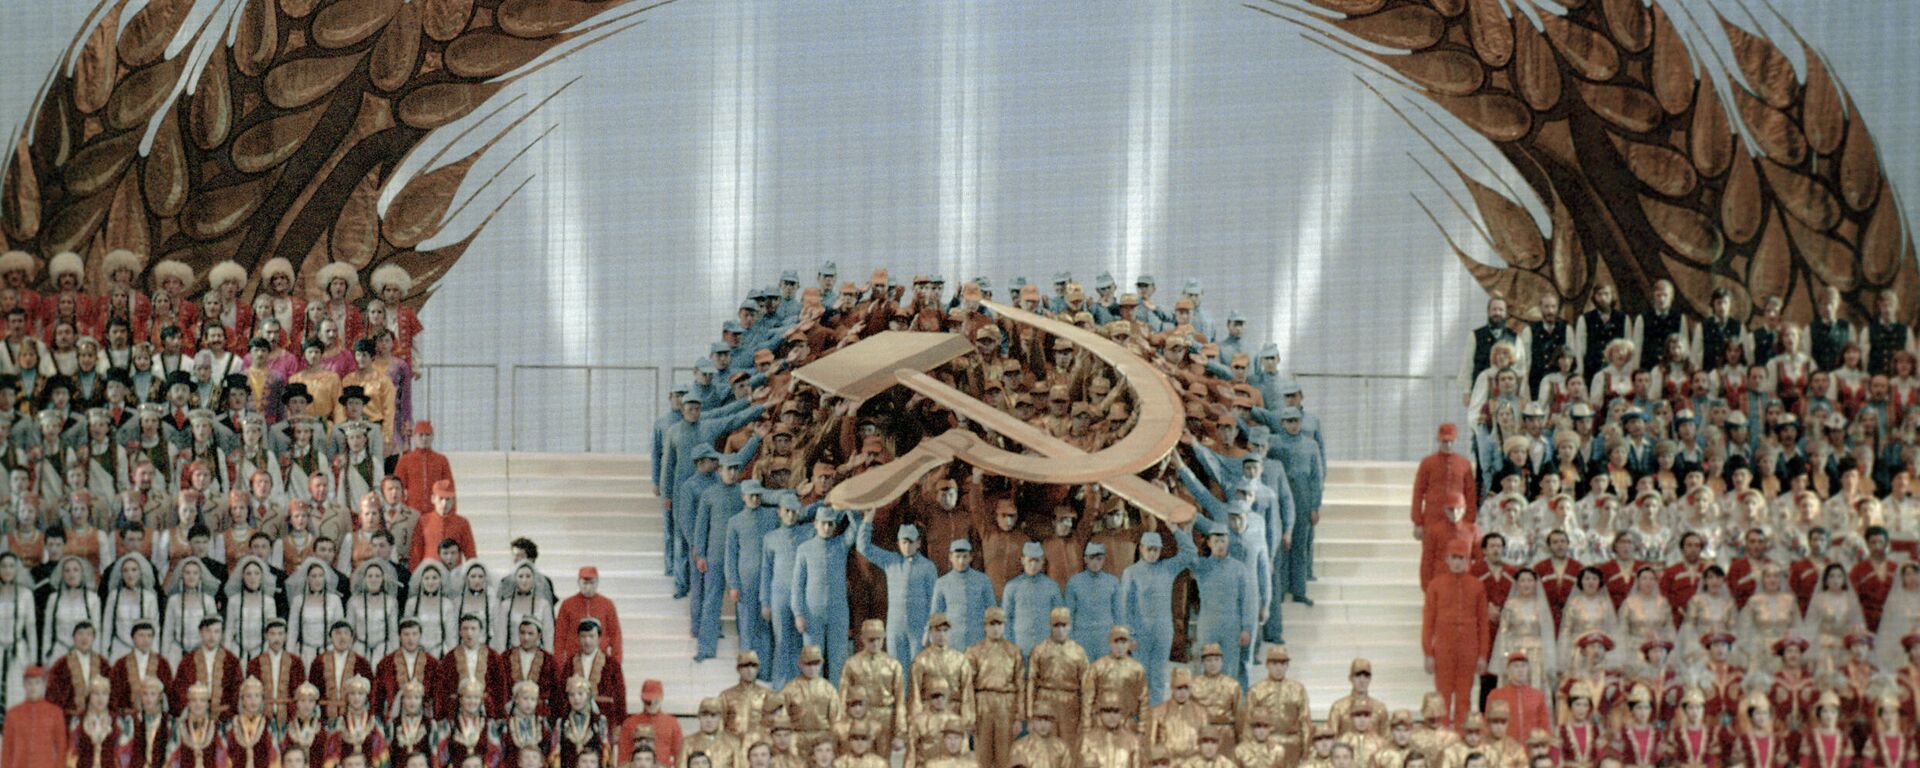 Koncerts par godu PSRS izveidošanas 60.gadadienai - Sputnik Latvija, 1920, 12.12.2021